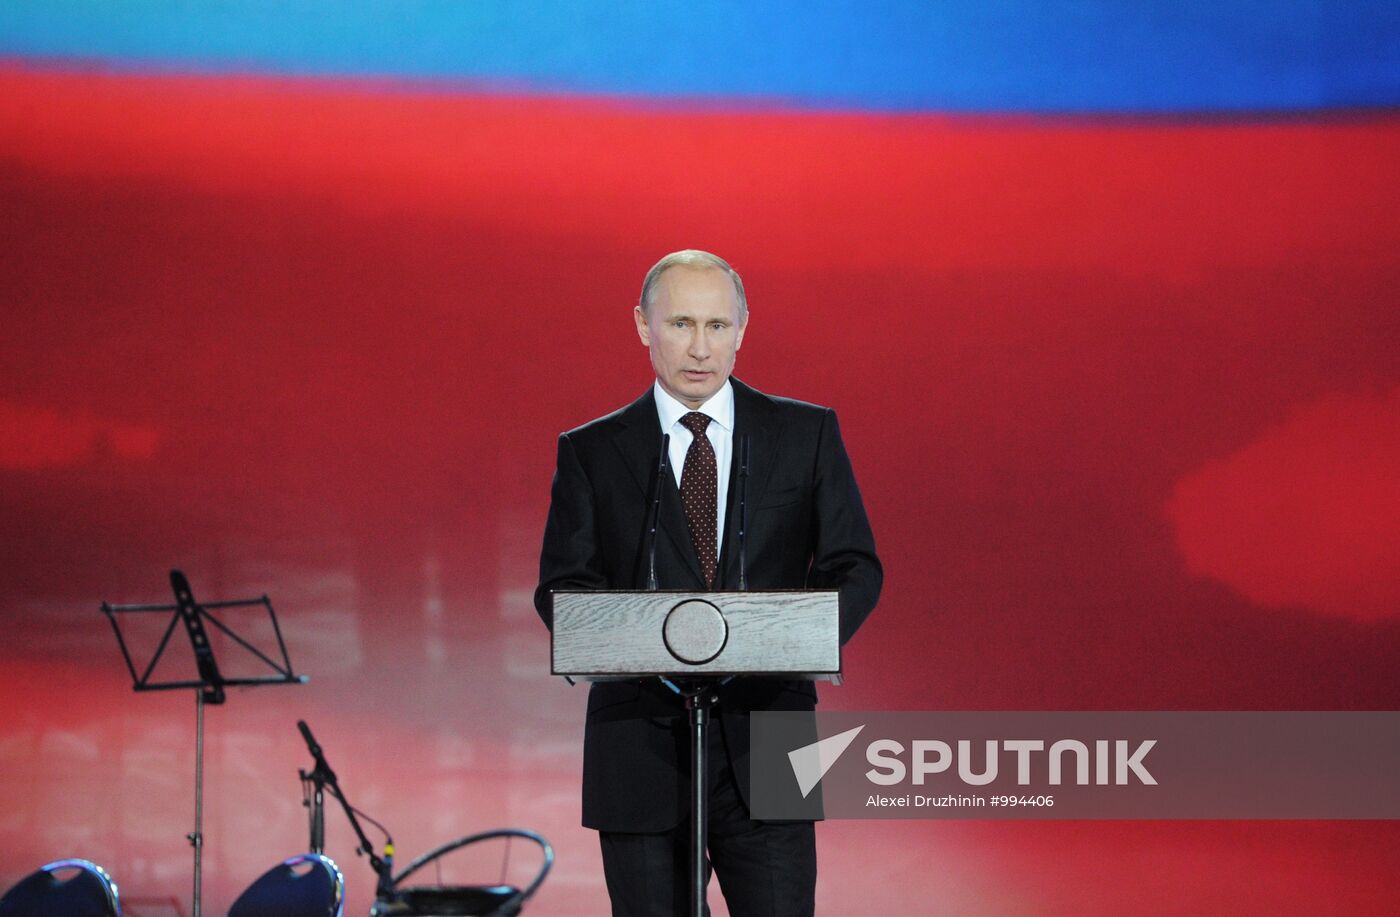 Vladimir Putin at a reception in Kremlin